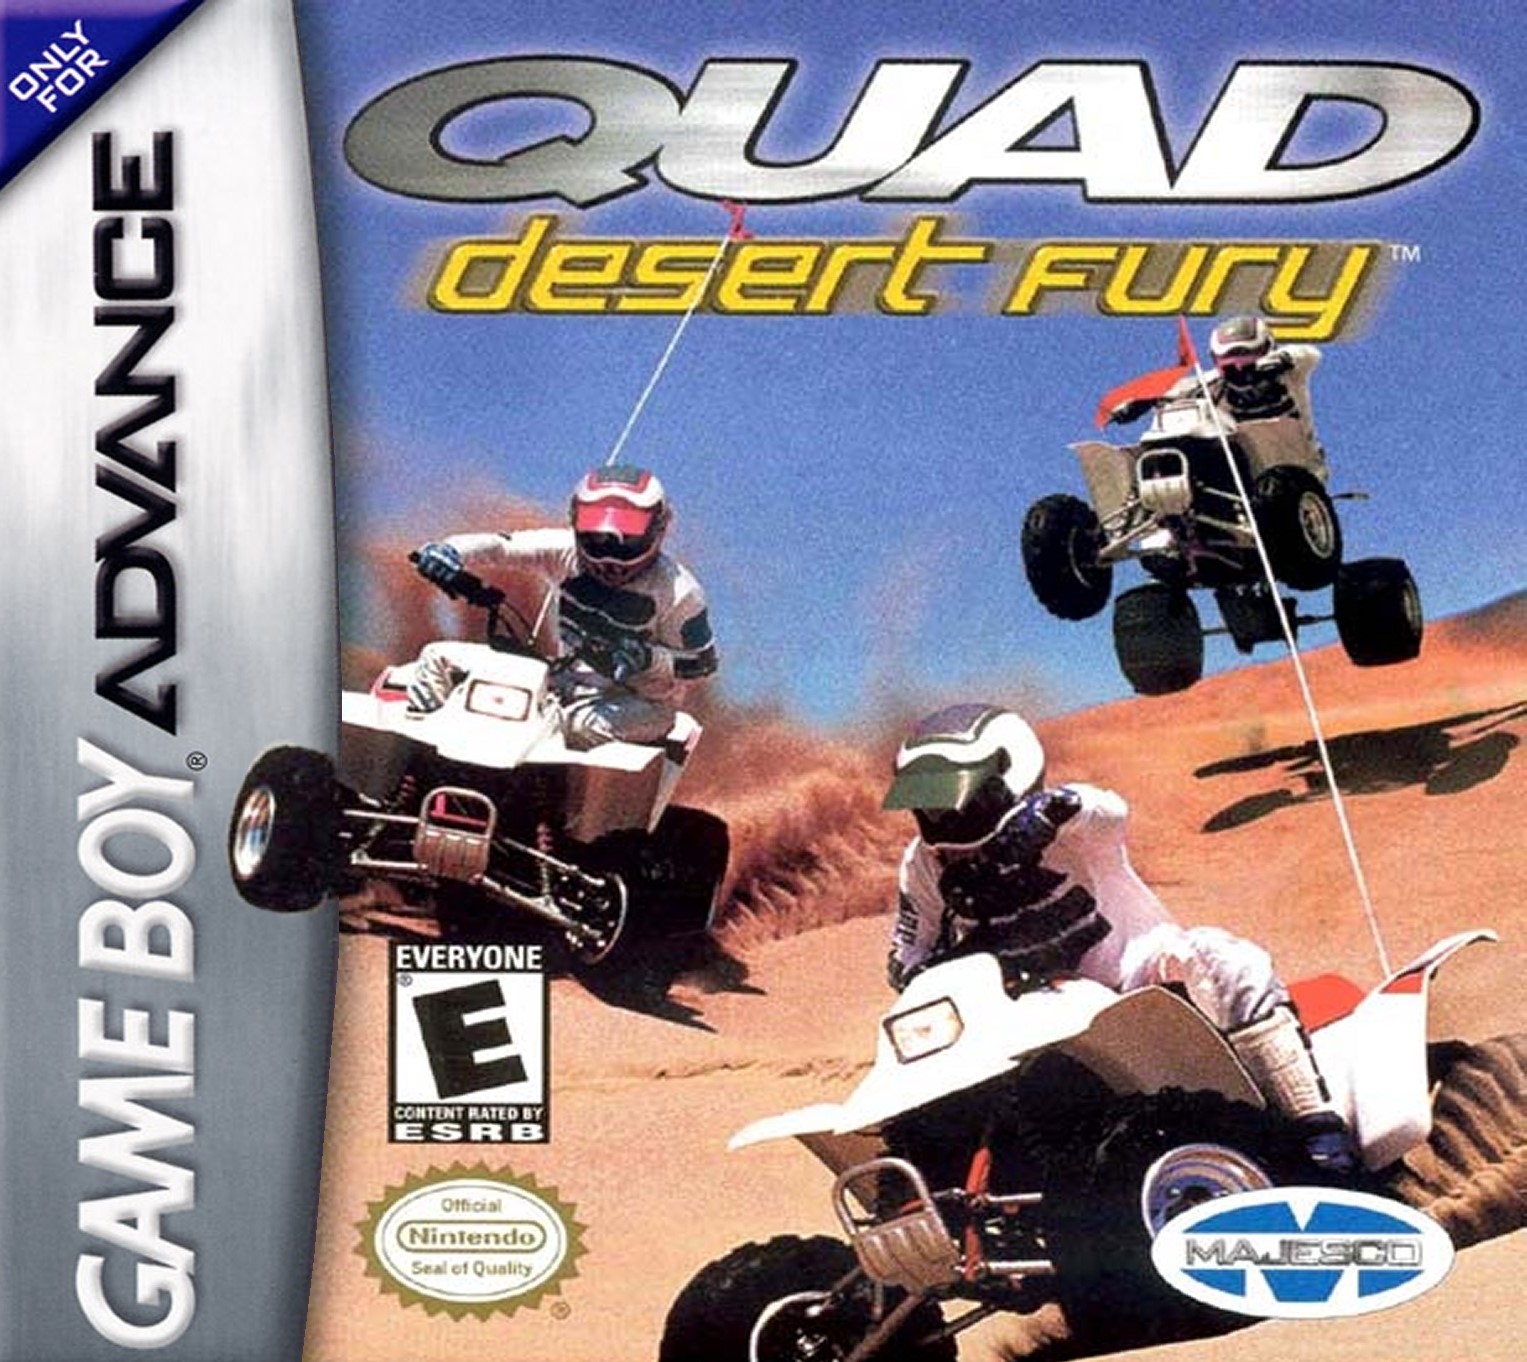 'Quad Desert Fury'